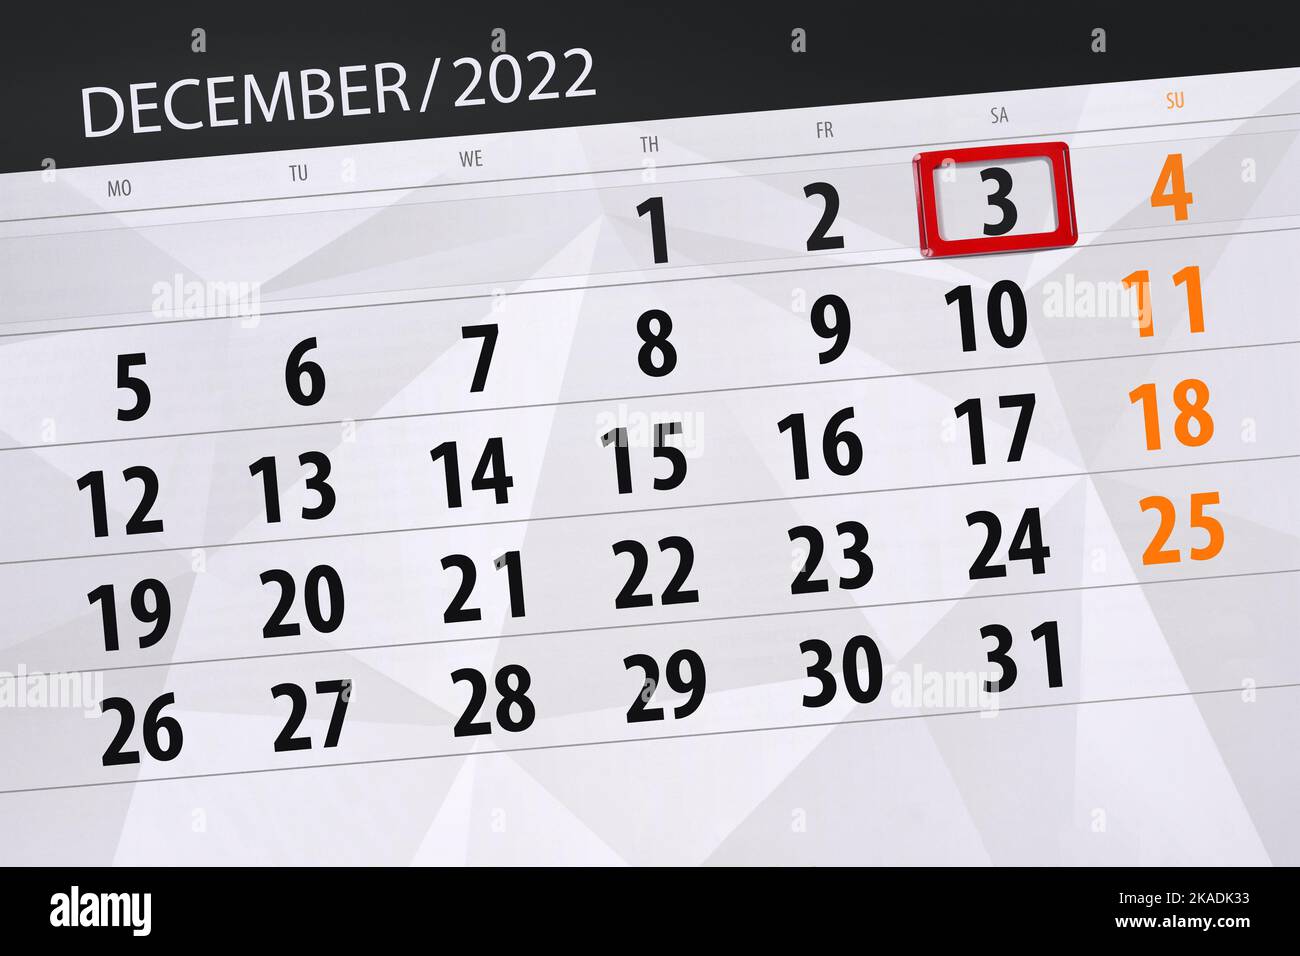 Calendrier 2022, date limite, jour, mois, page, organisateur, date, décembre, samedi, numéro 3. Banque D'Images